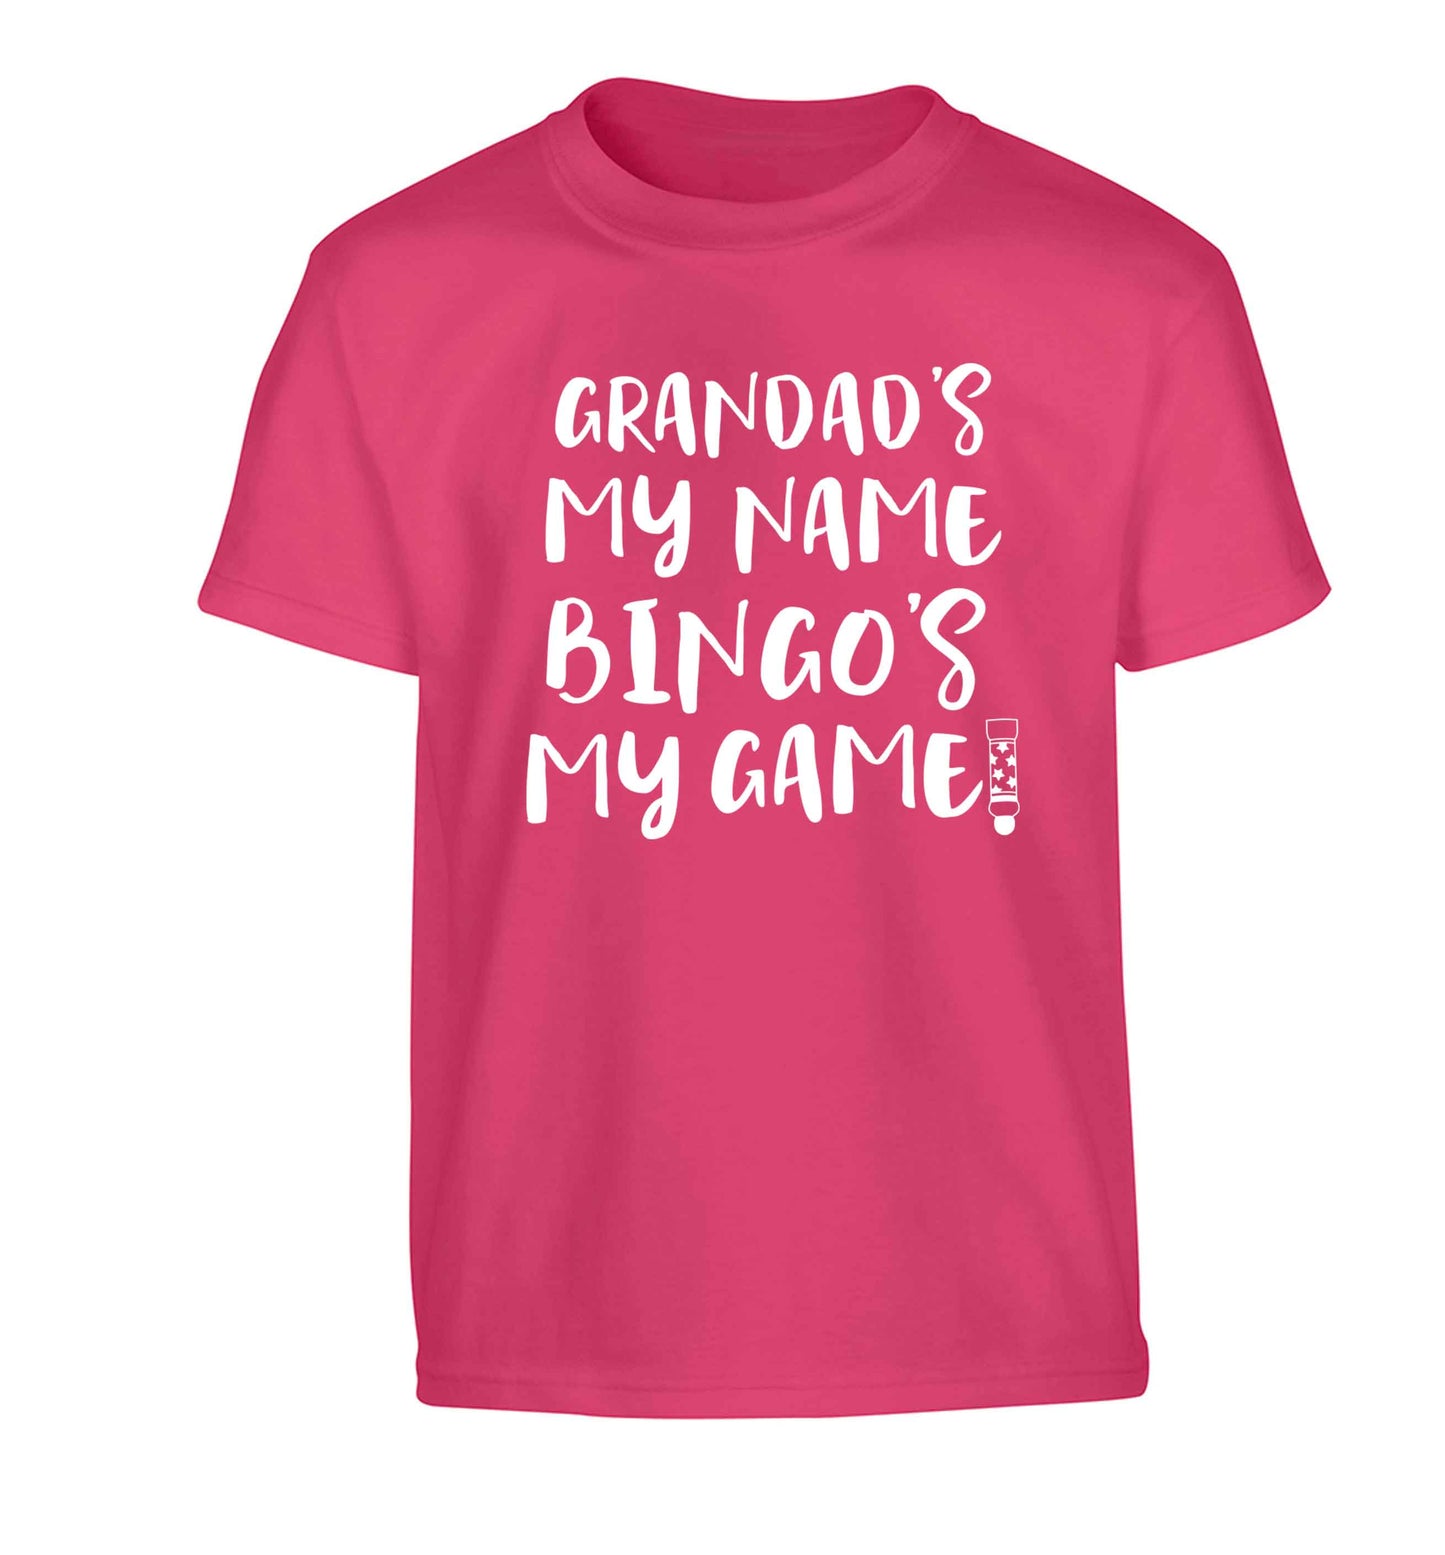 Grandad's my name bingo's my game! Children's pink Tshirt 12-13 Years